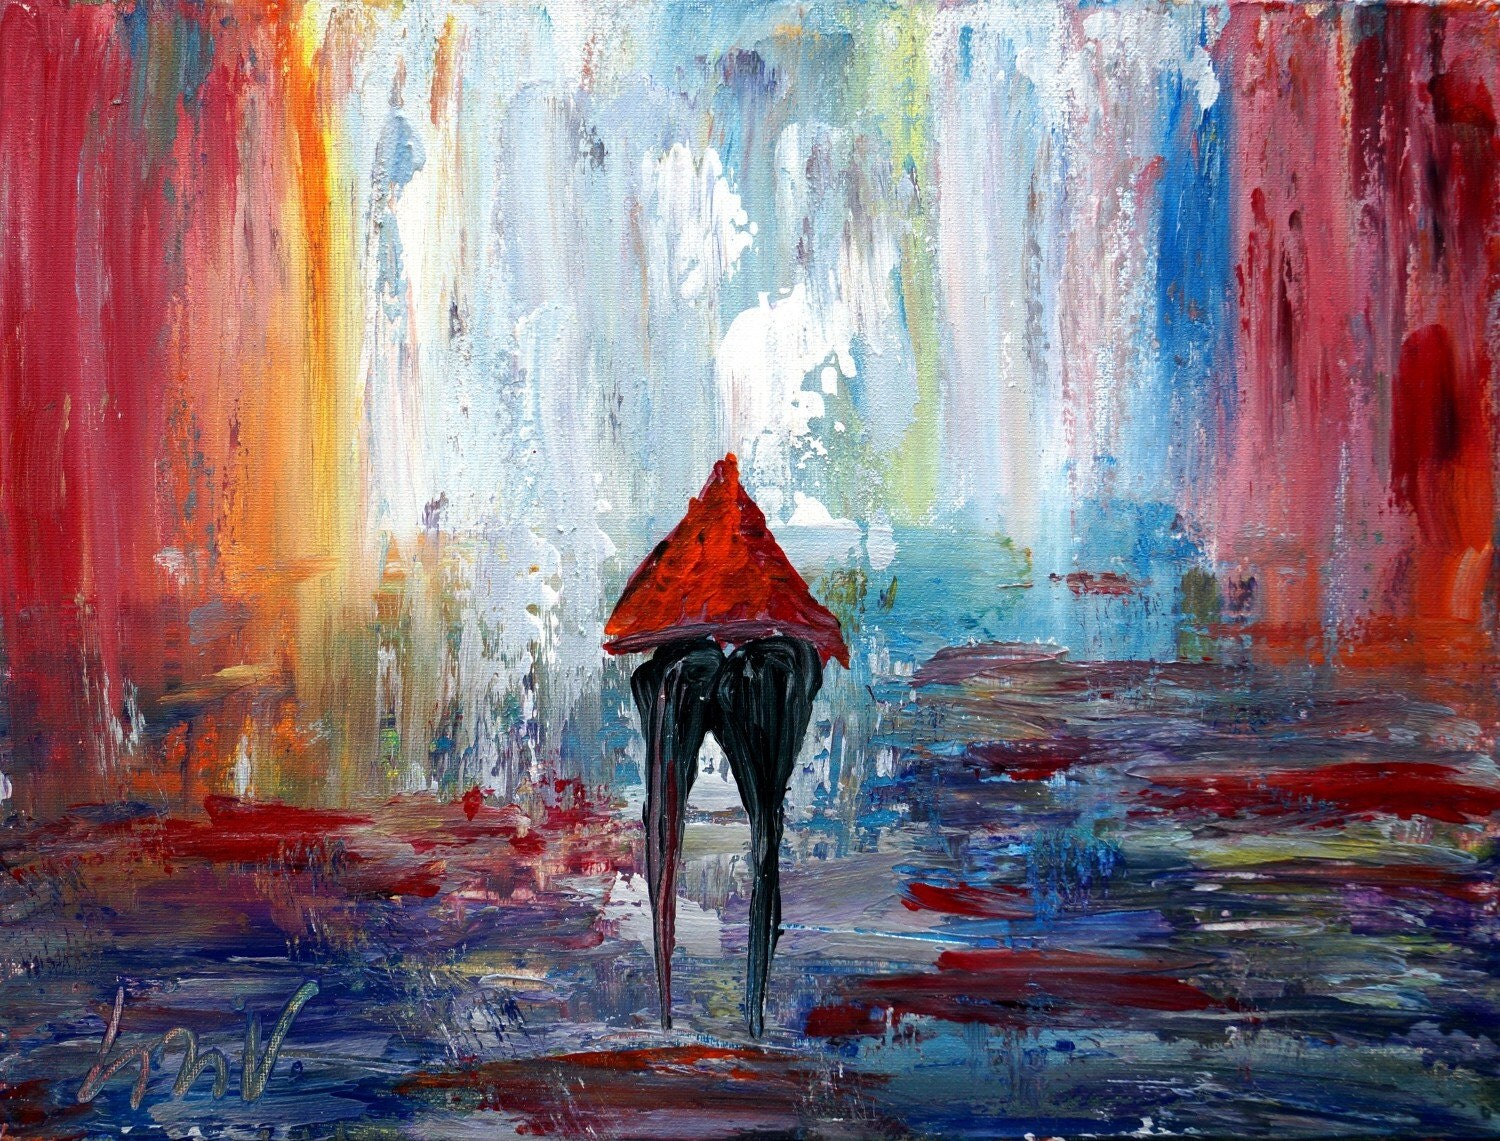 Rain Romance Painting T For A Romantic Couple Original Oil